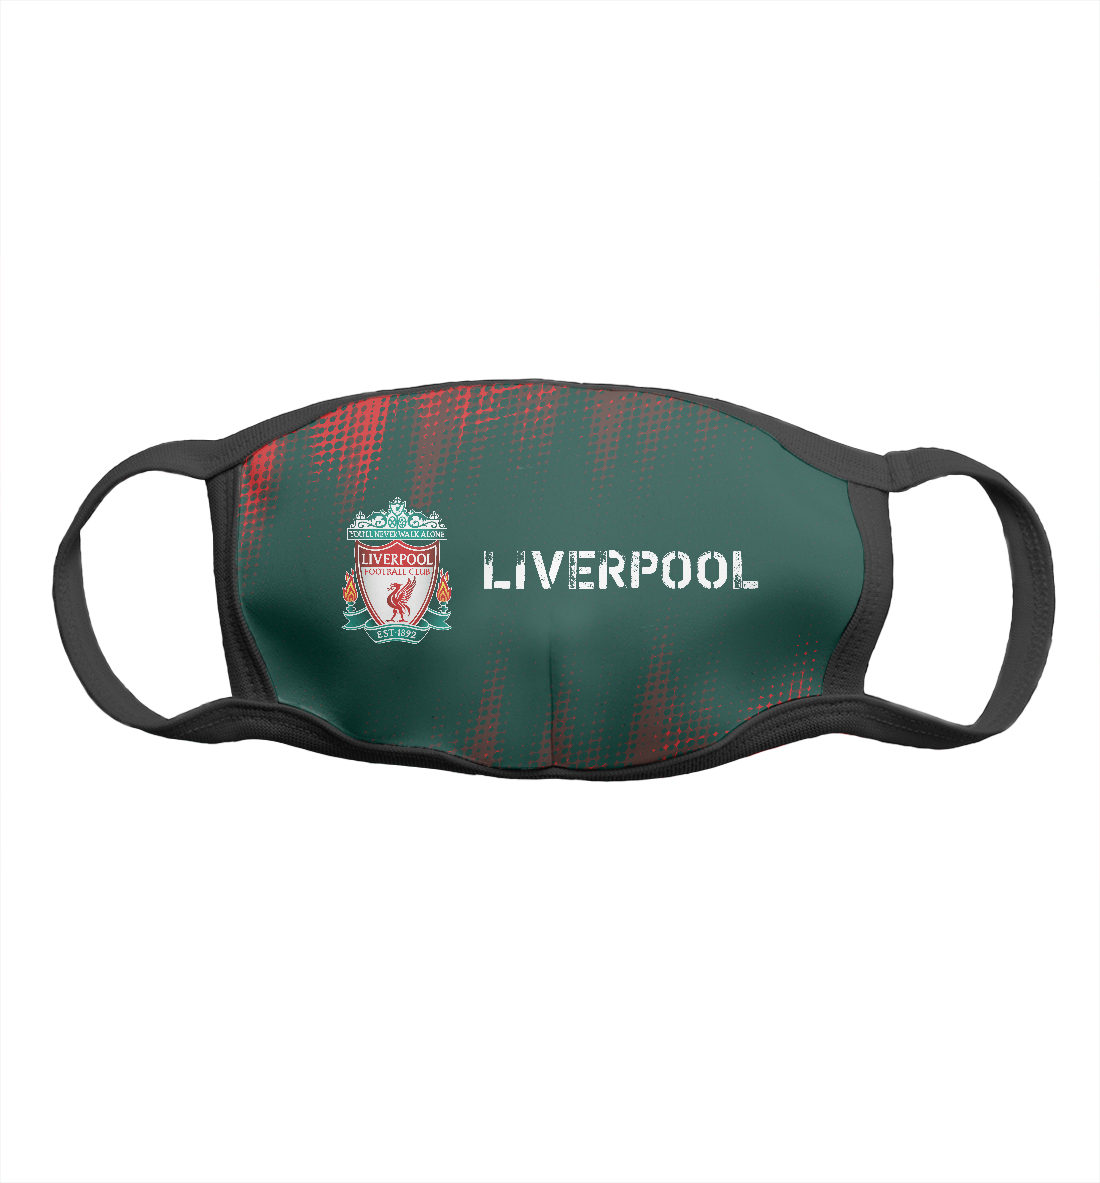 Liverpool | Liverpool liverpool liverpool